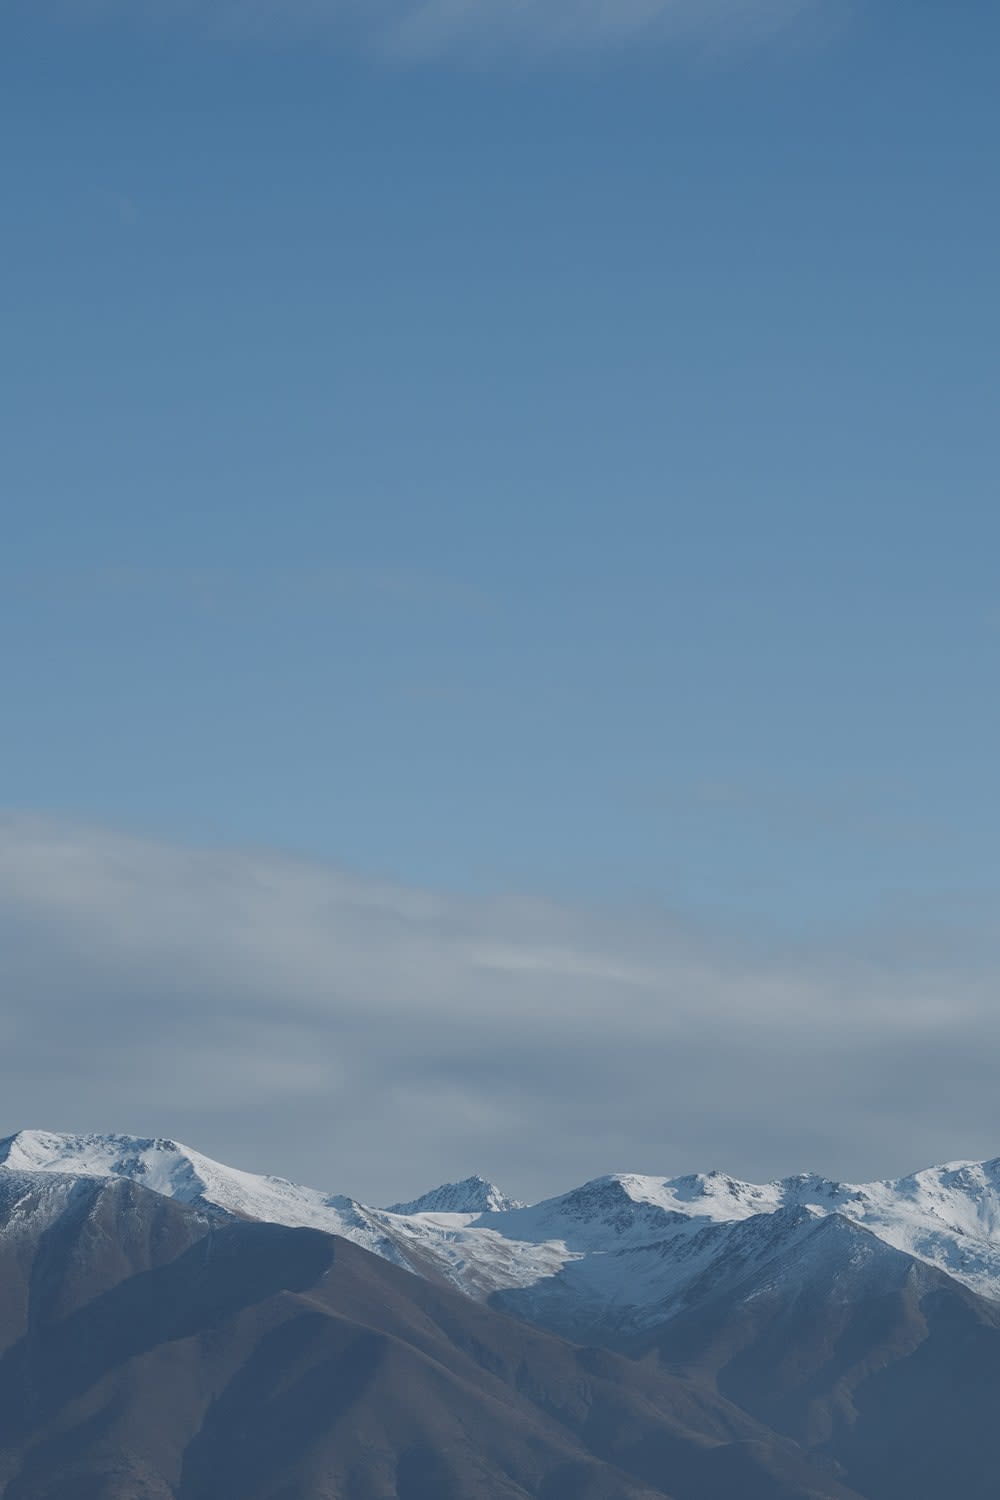 Chaussettes mérinos grammage léger Hike+ Natural Summit - Icebreaker (EU)